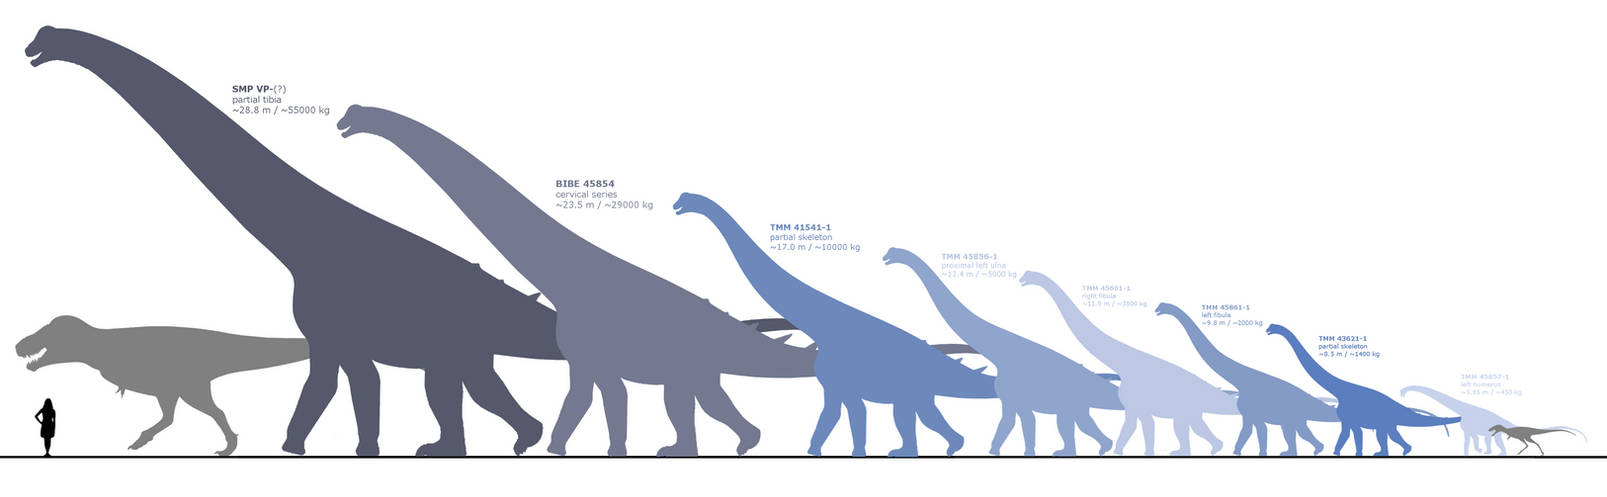 Сравнение динозавров. Alamosaurus sanjuanensis. Сравнение размеров динозавров. Динозавры по сравнению с человеком. Размеры динозавров.